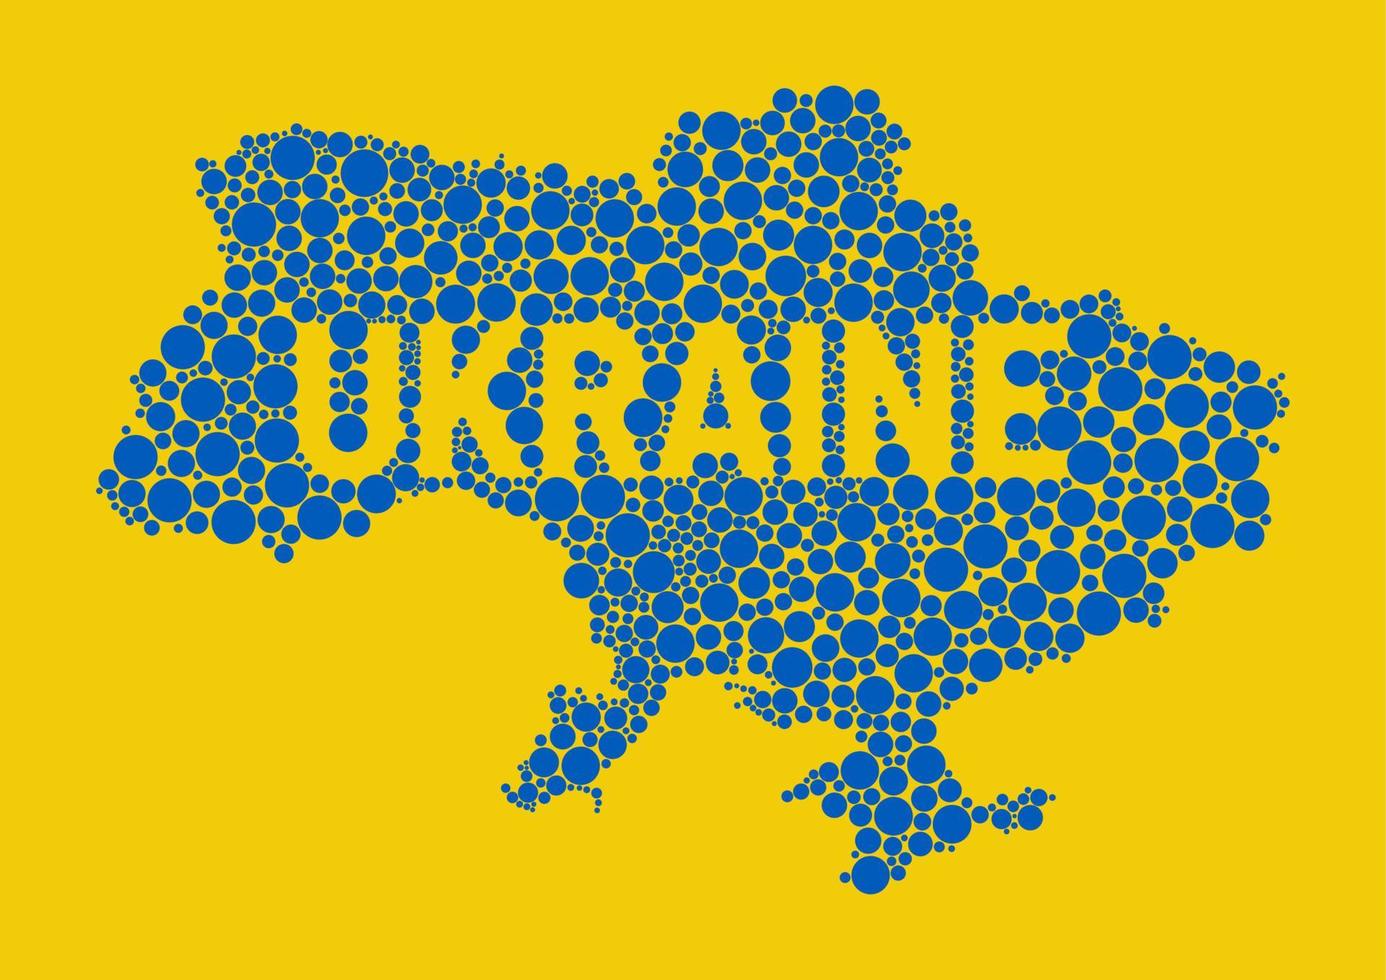 mapa pontilhado aleatório de vetor da ucrânia. mapa pixelizado da ucrânia nas cores azuis e amarelas nacionais da bandeira da ucrânia. com texto na bandeira ucraniana. para cartazes, cartões postais. como quebra-cabeça ou mosaico.